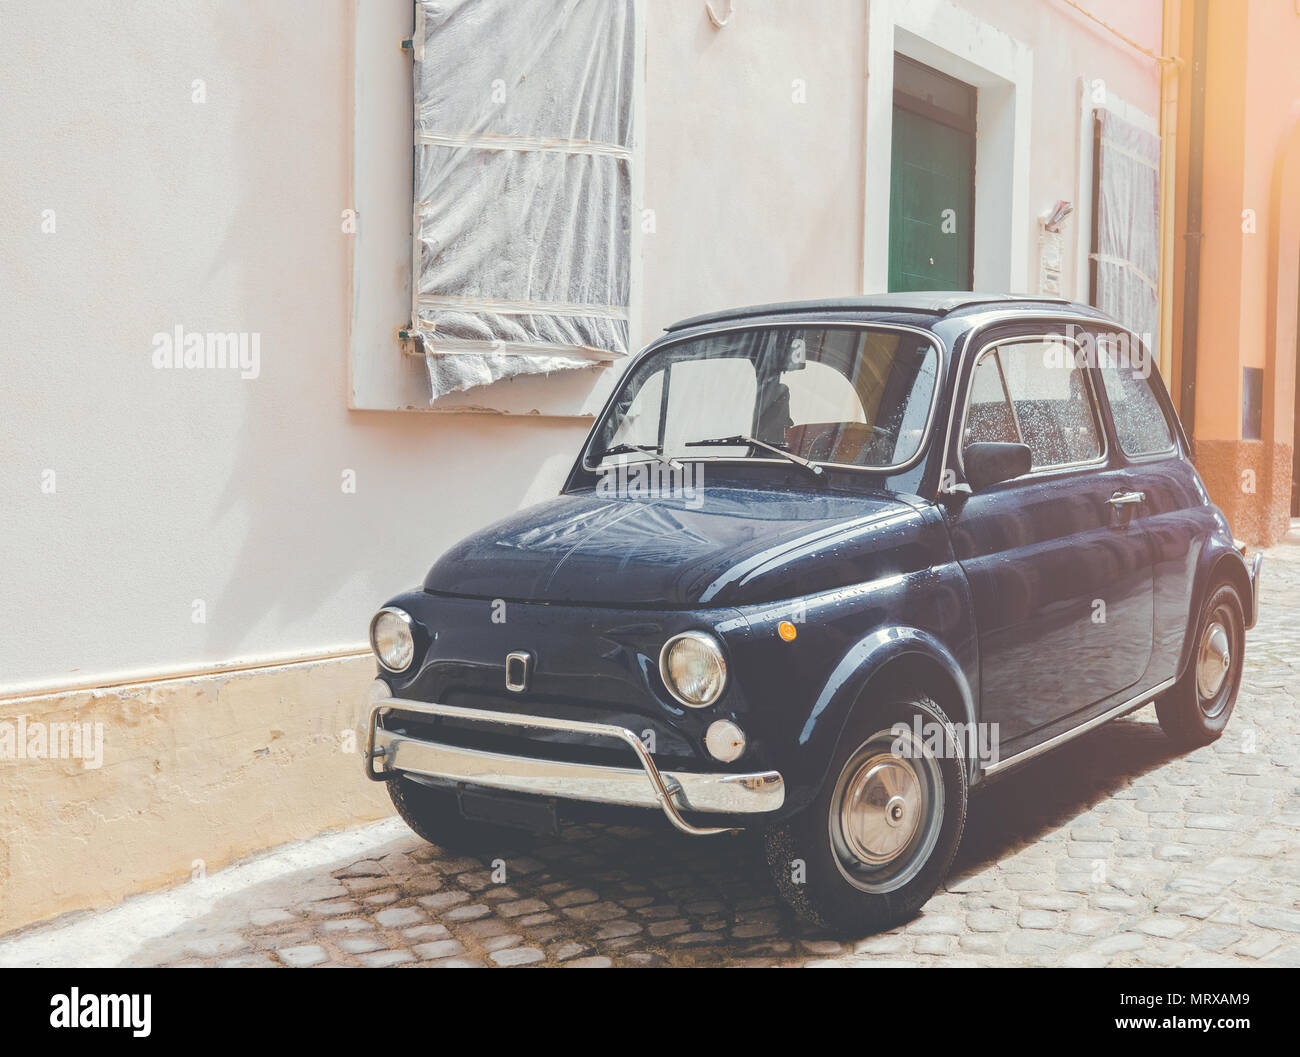 Un vieux italien bleu 500 voiture est garée sur une rue typique italien Banque D'Images